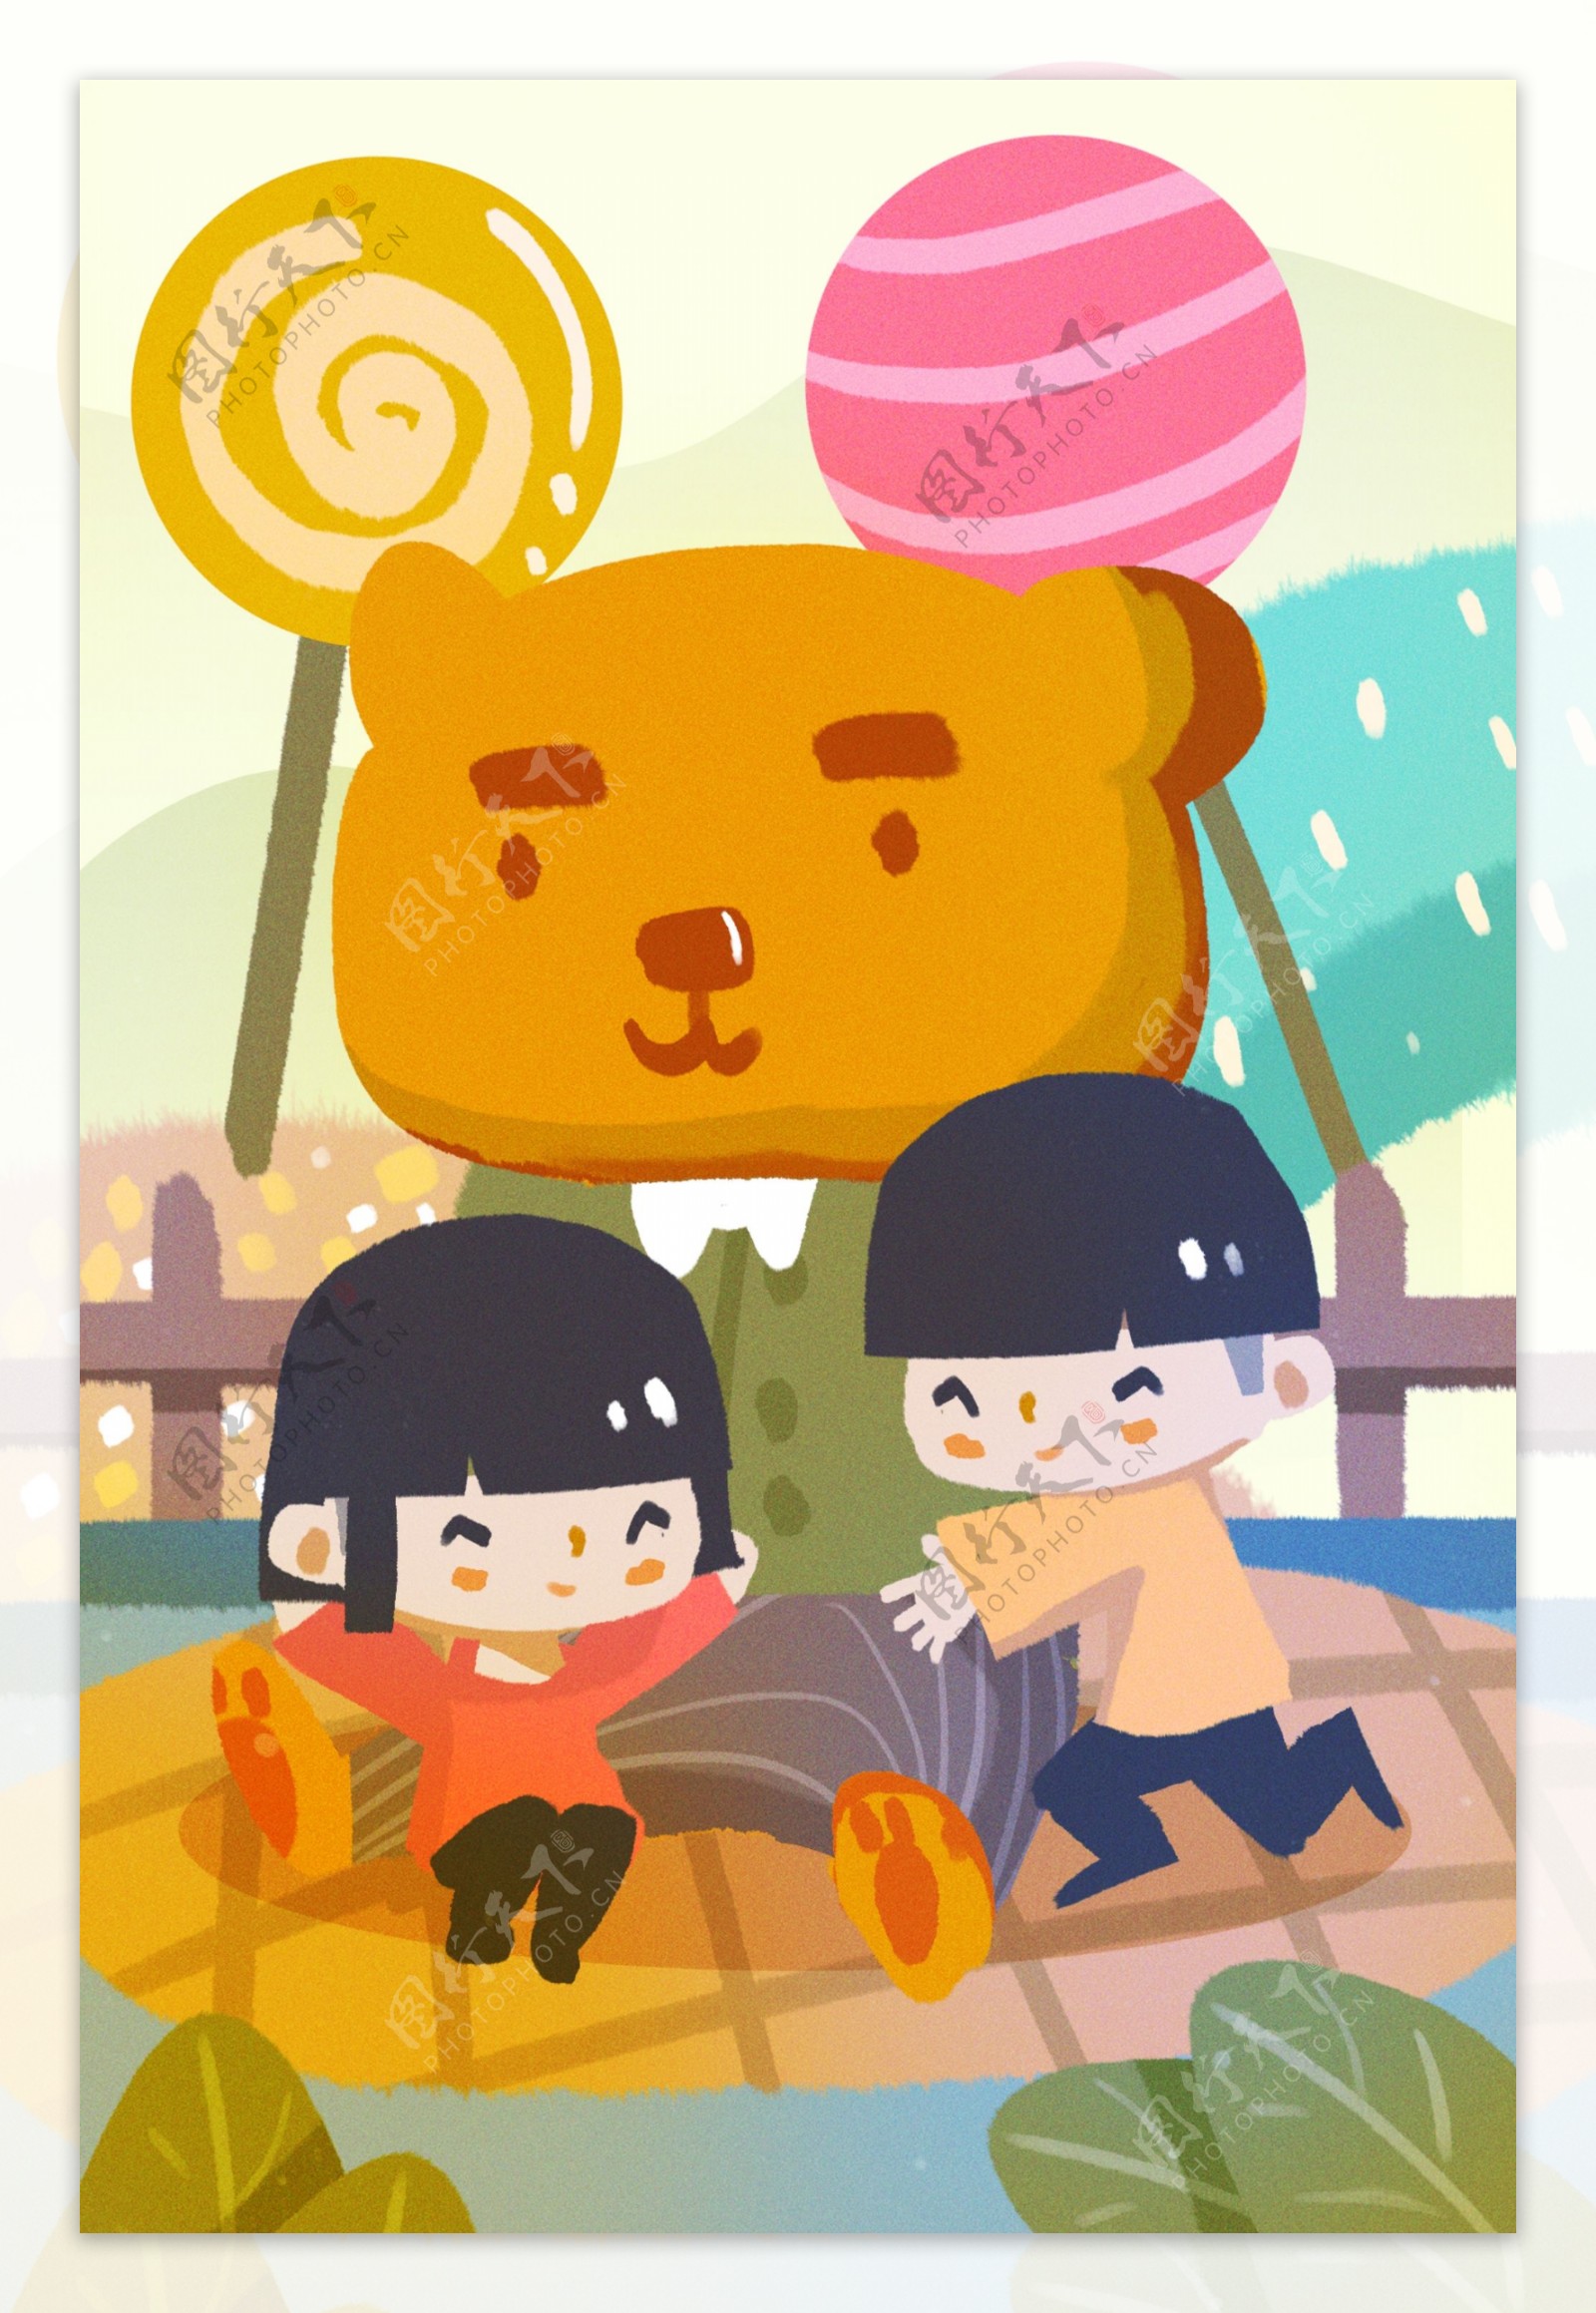 卡通小熊游戏儿童节背景图